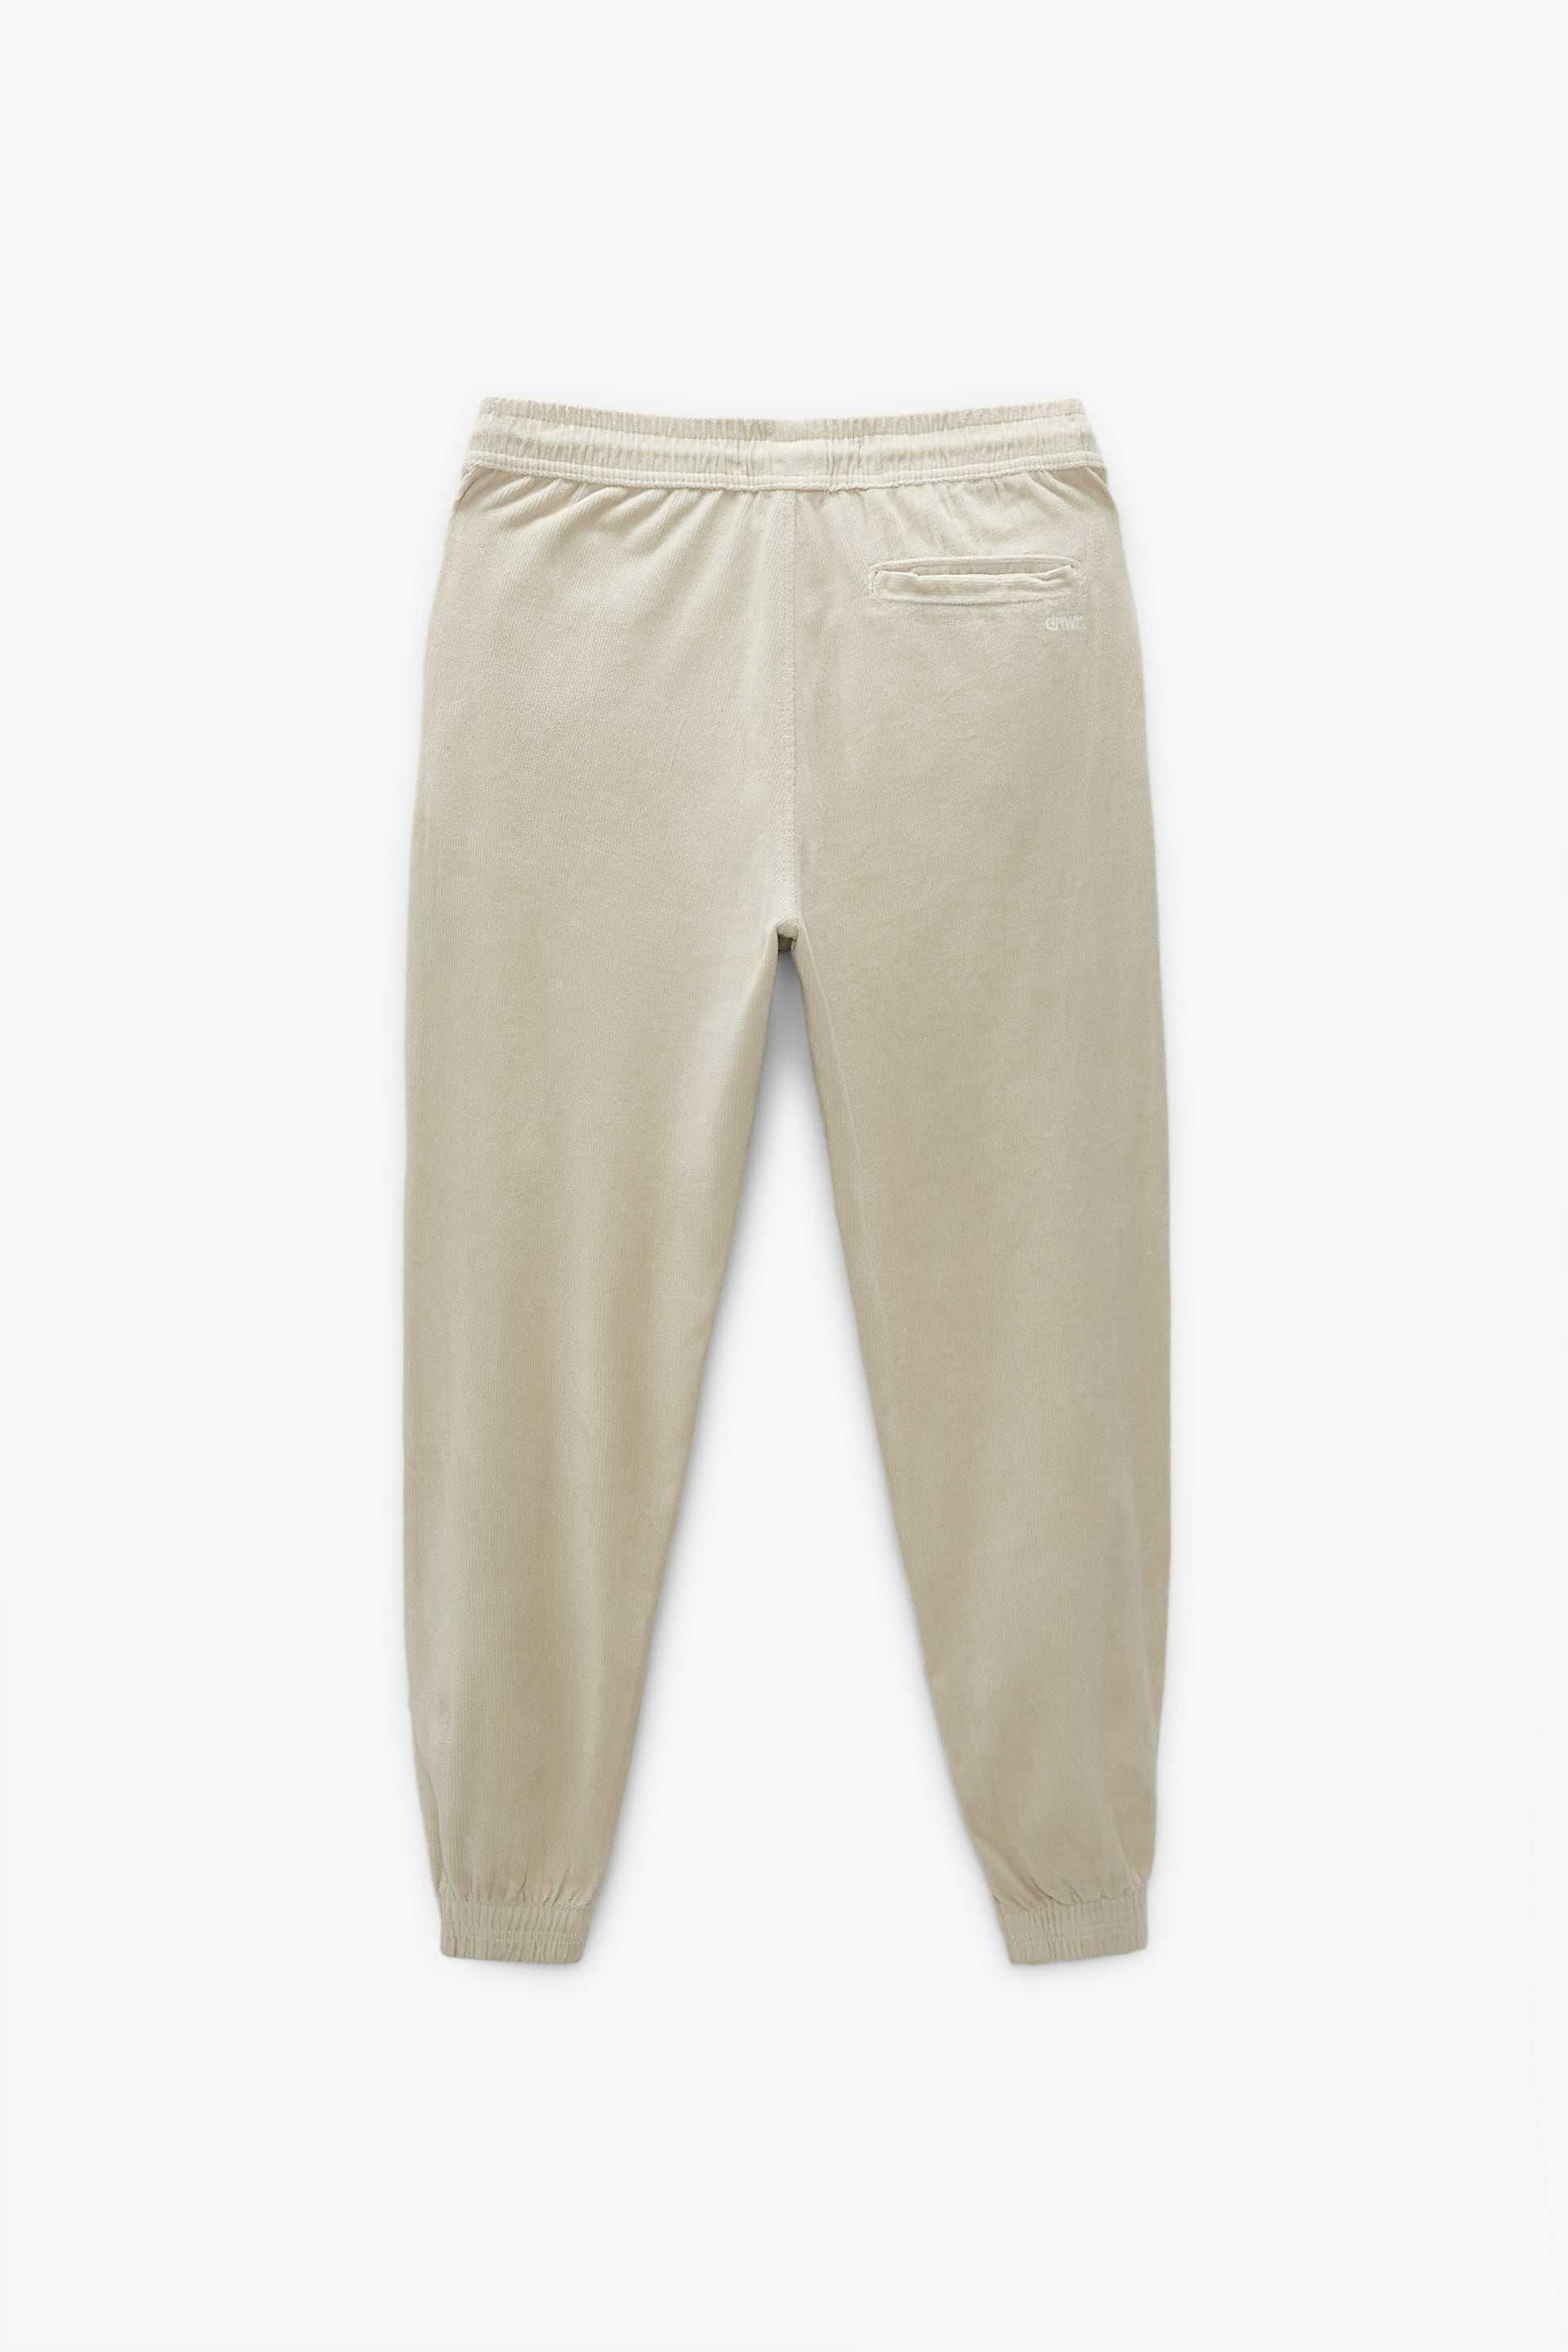 Новые мужские брюки-джоггеры Zara с надписью размер S